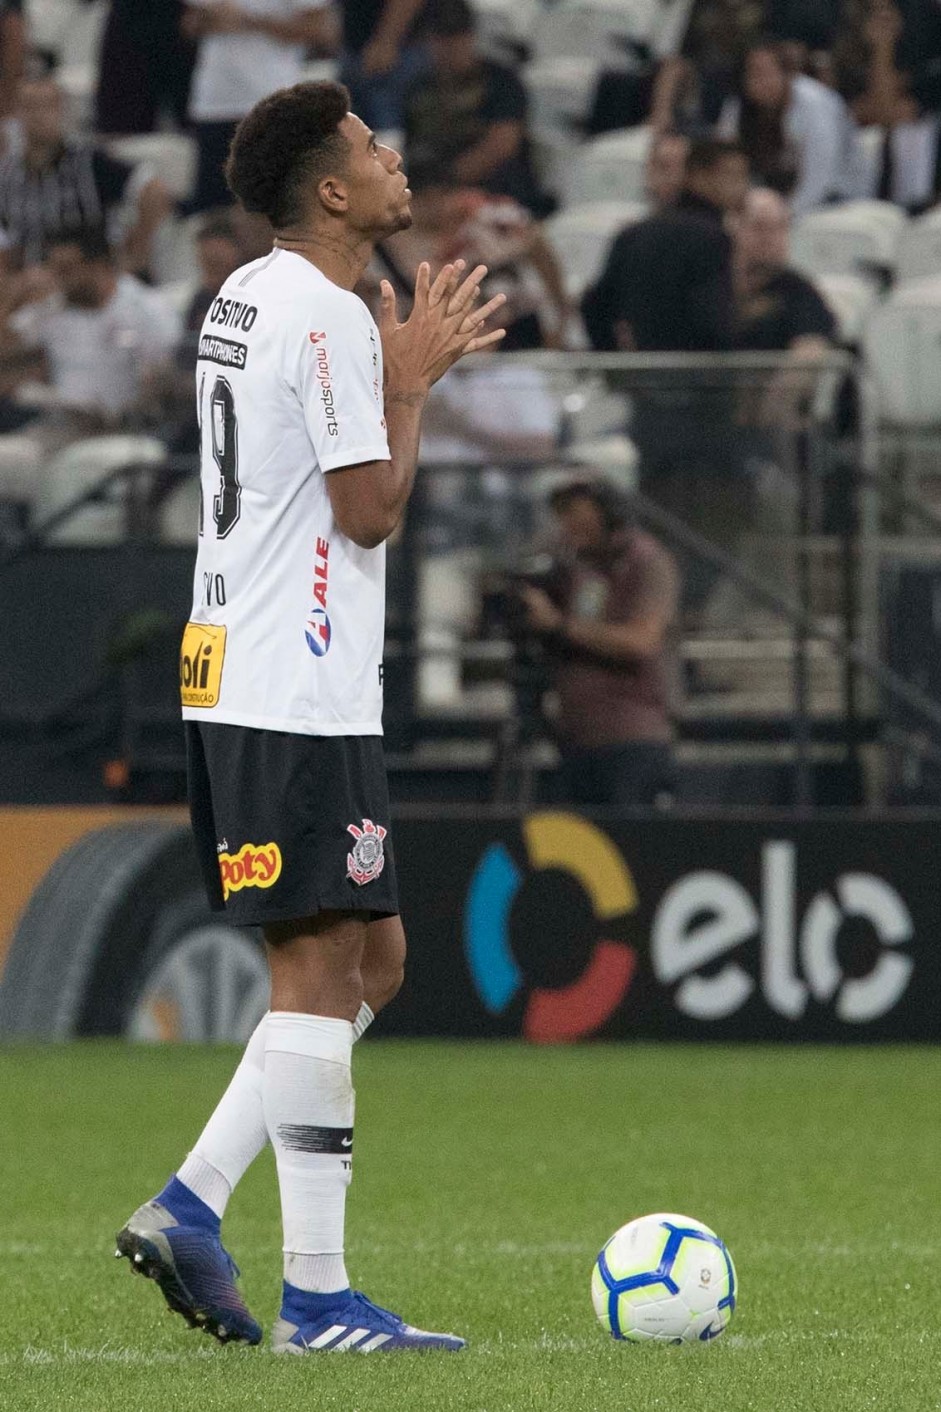 Gustagol segue sendo o artilheiro do Corinthians em 2019